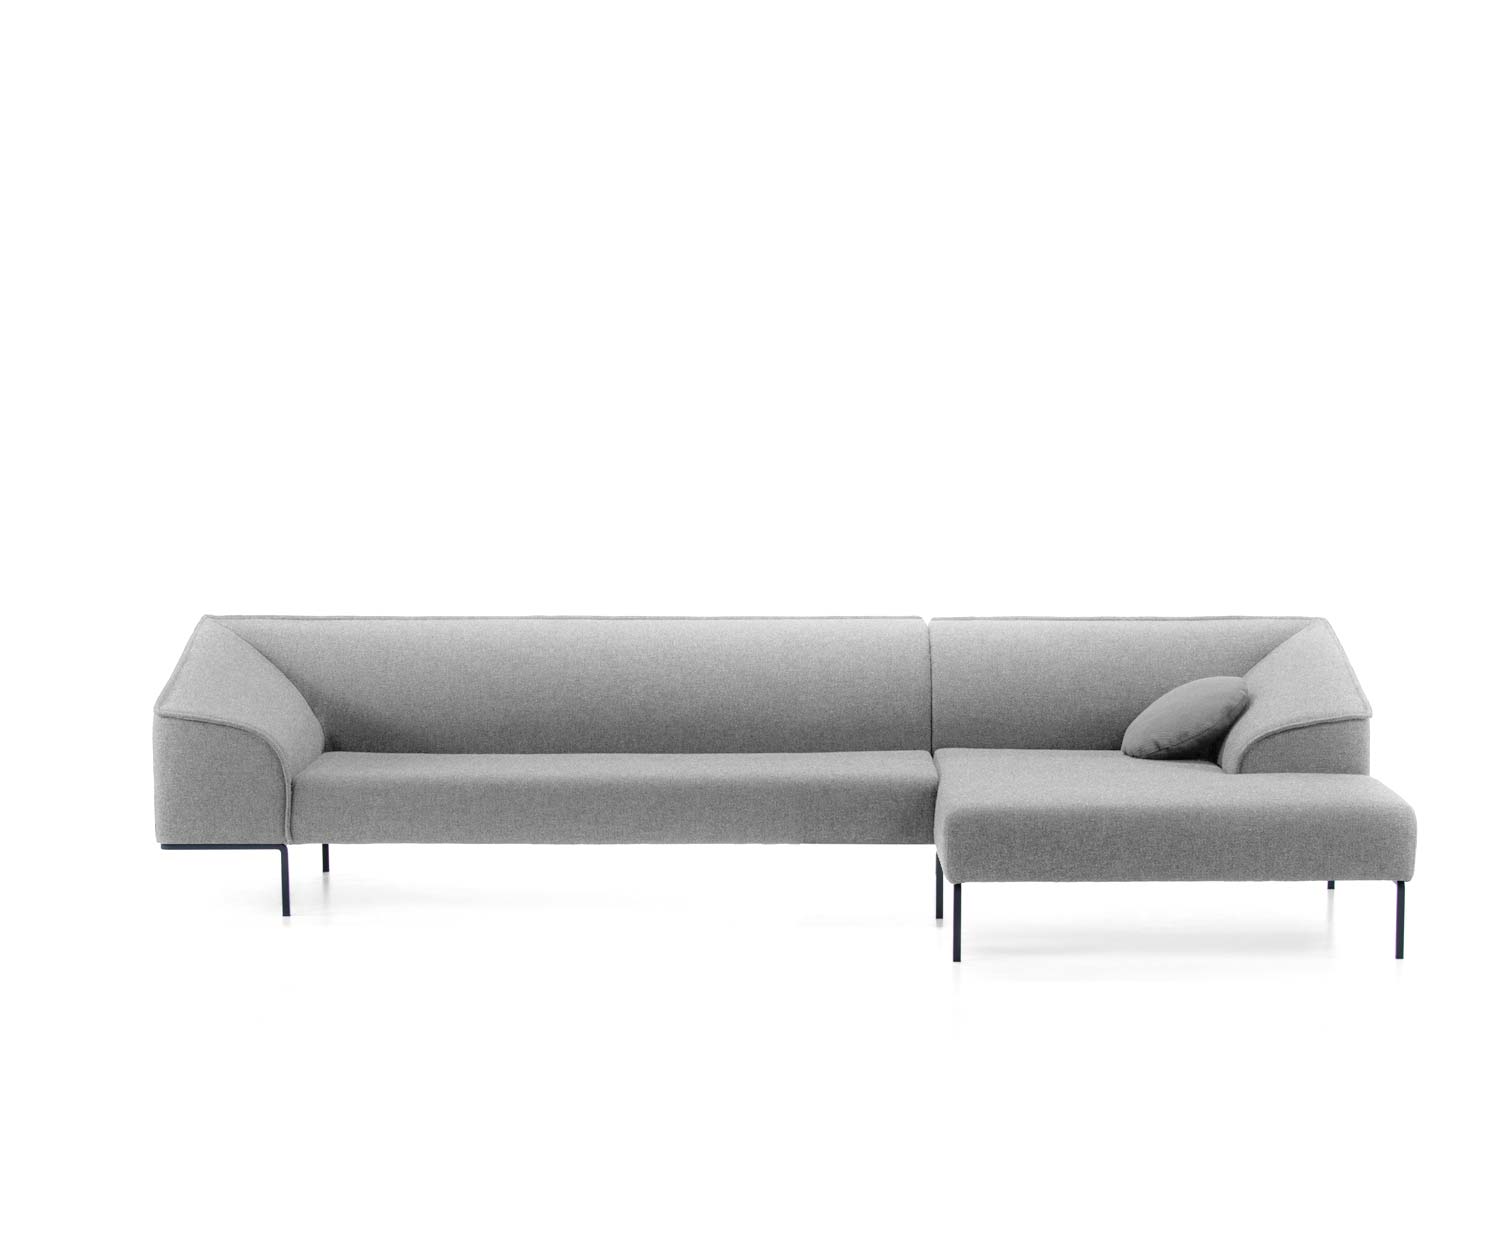 Prostoria Seam in grigio chiaro come divano angolare con chaise longue a destra